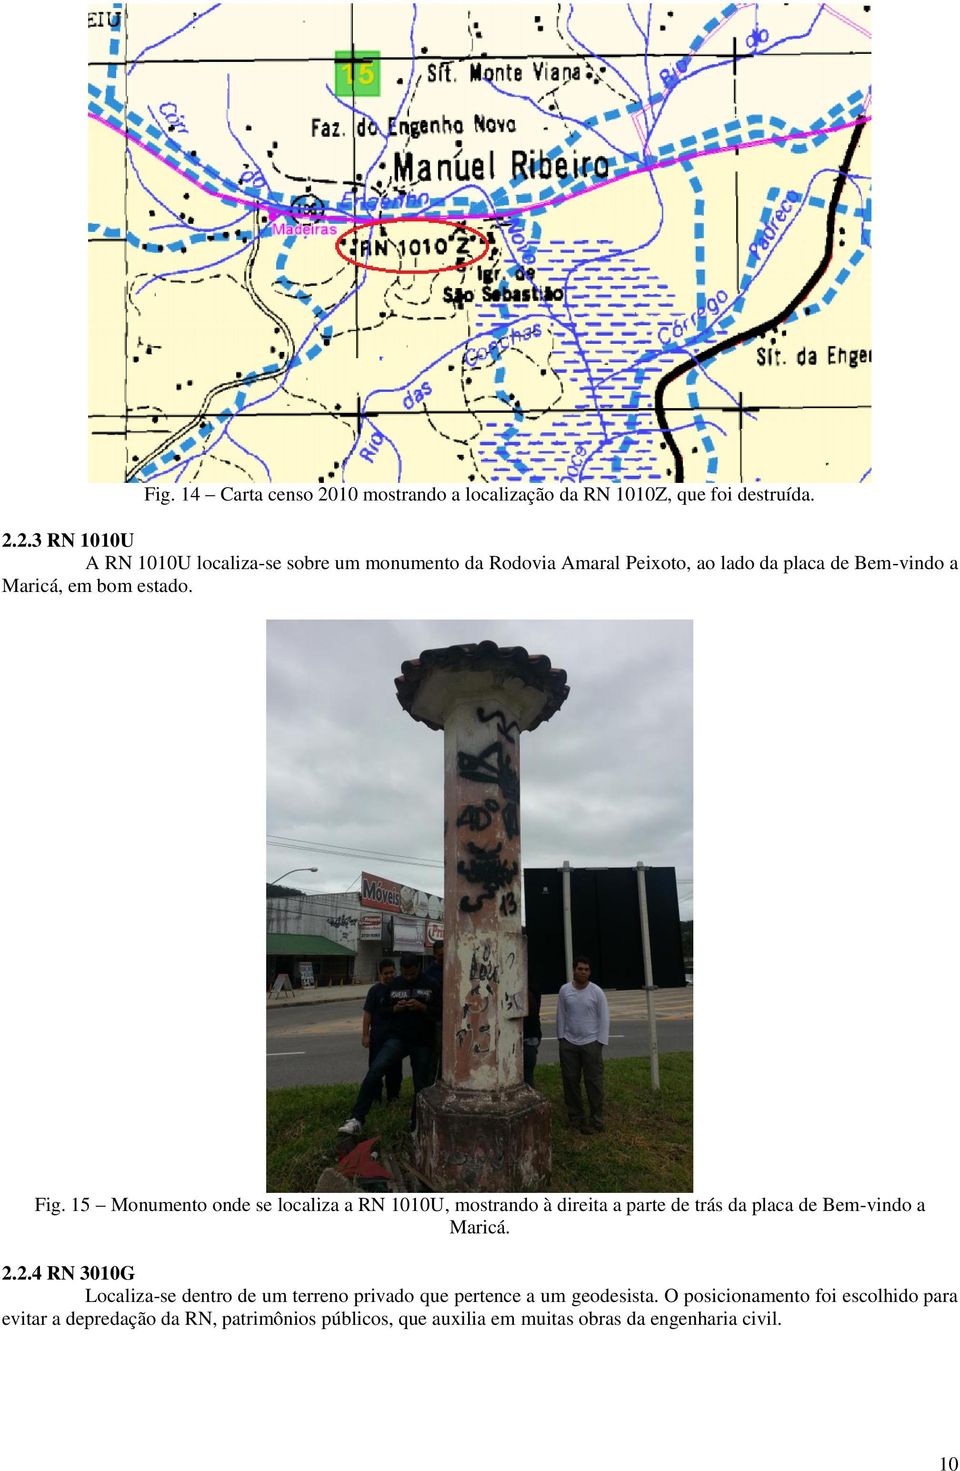 2.3 RN 1010U A RN 1010U localiza-se sobre um monumento da Rodovia Amaral Peixoto, ao lado da placa de Bem-vindo a Maricá, em bom estado.